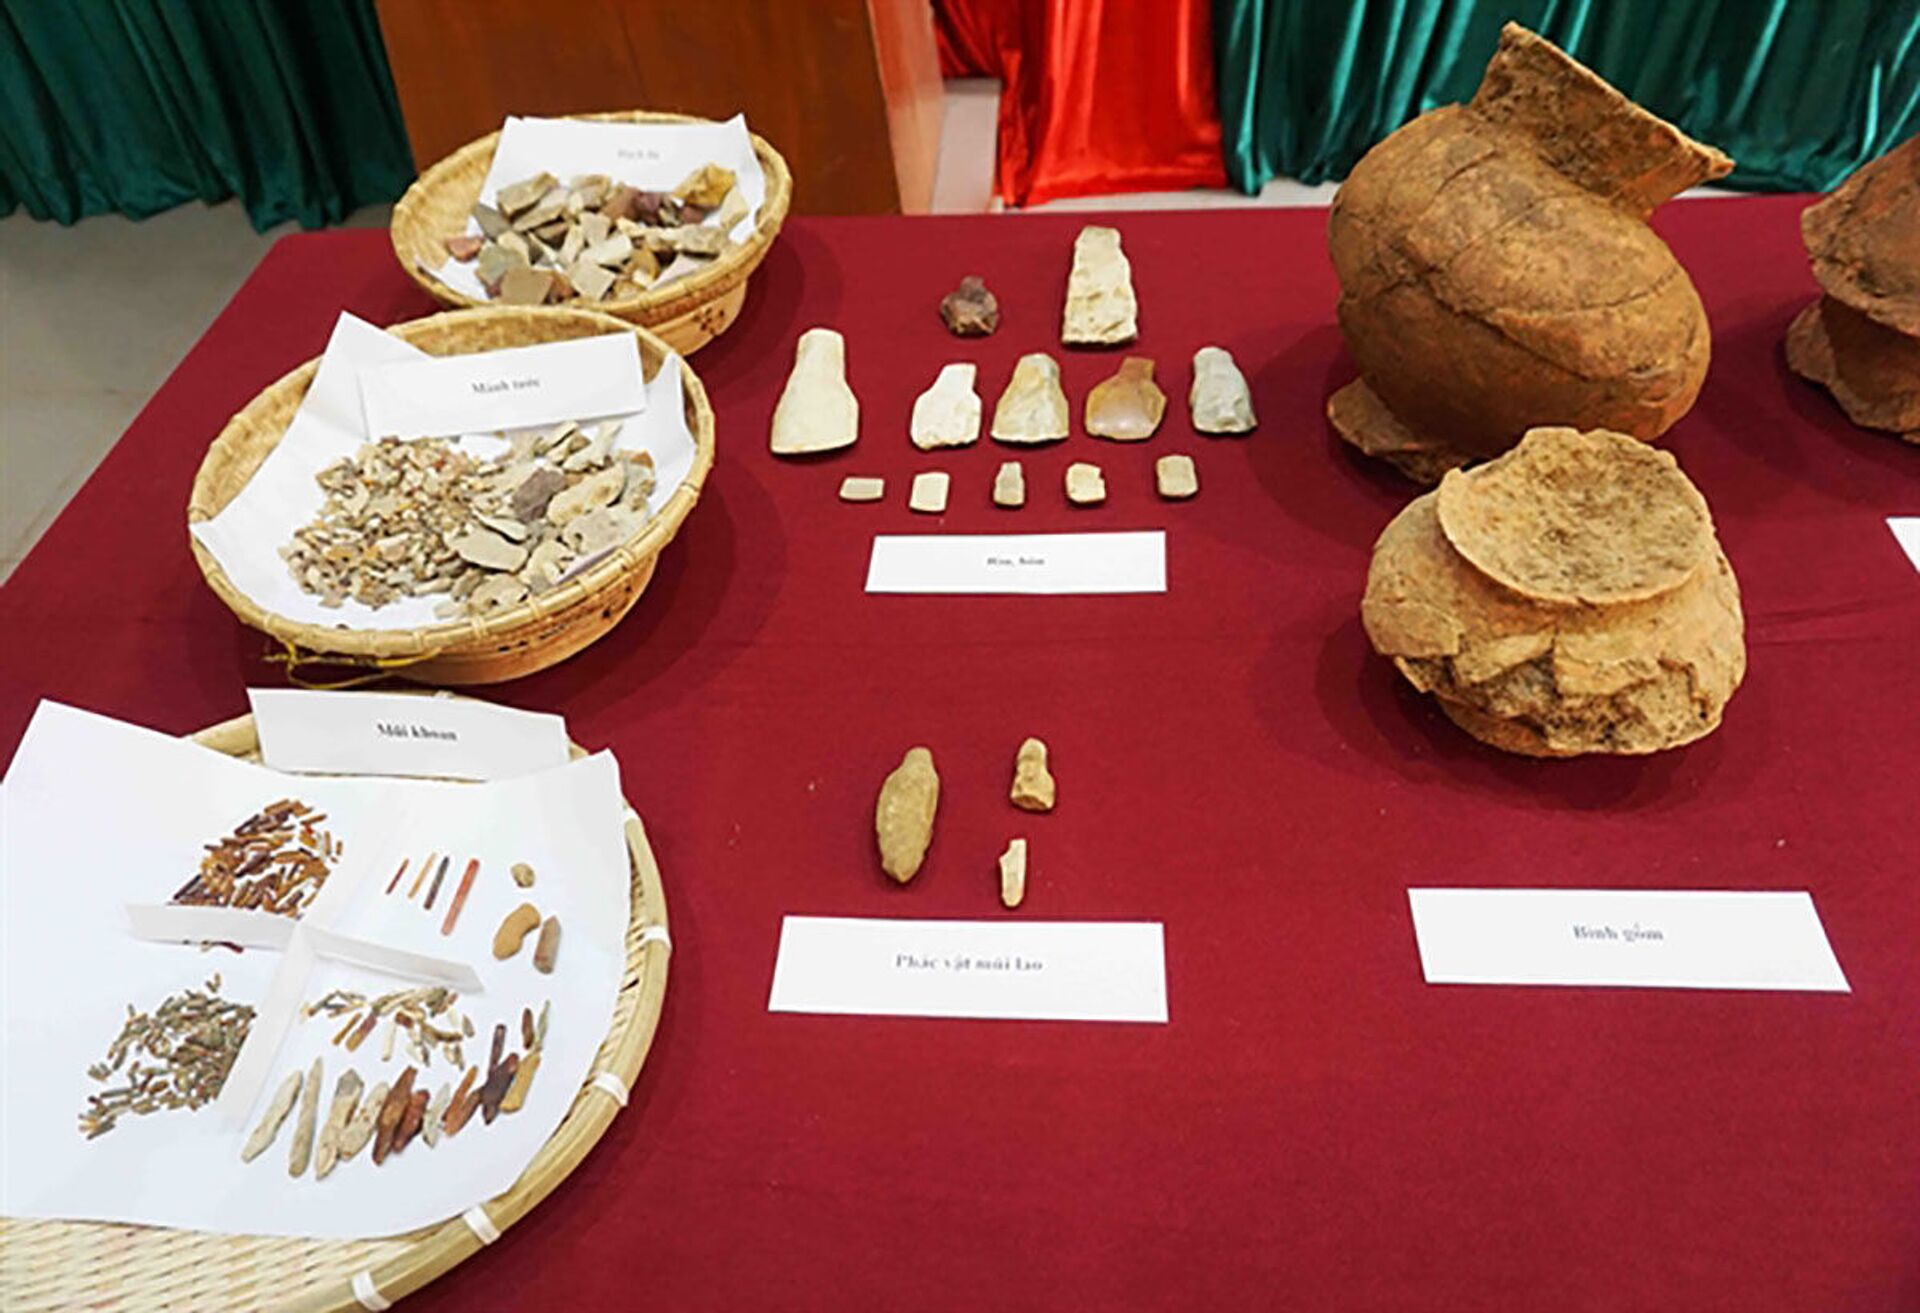 Oficina de brocas de 3 mil anos com milhares de itens é descoberta em escavações no Vietnã (FOTO) - Sputnik Brasil, 1920, 18.05.2021